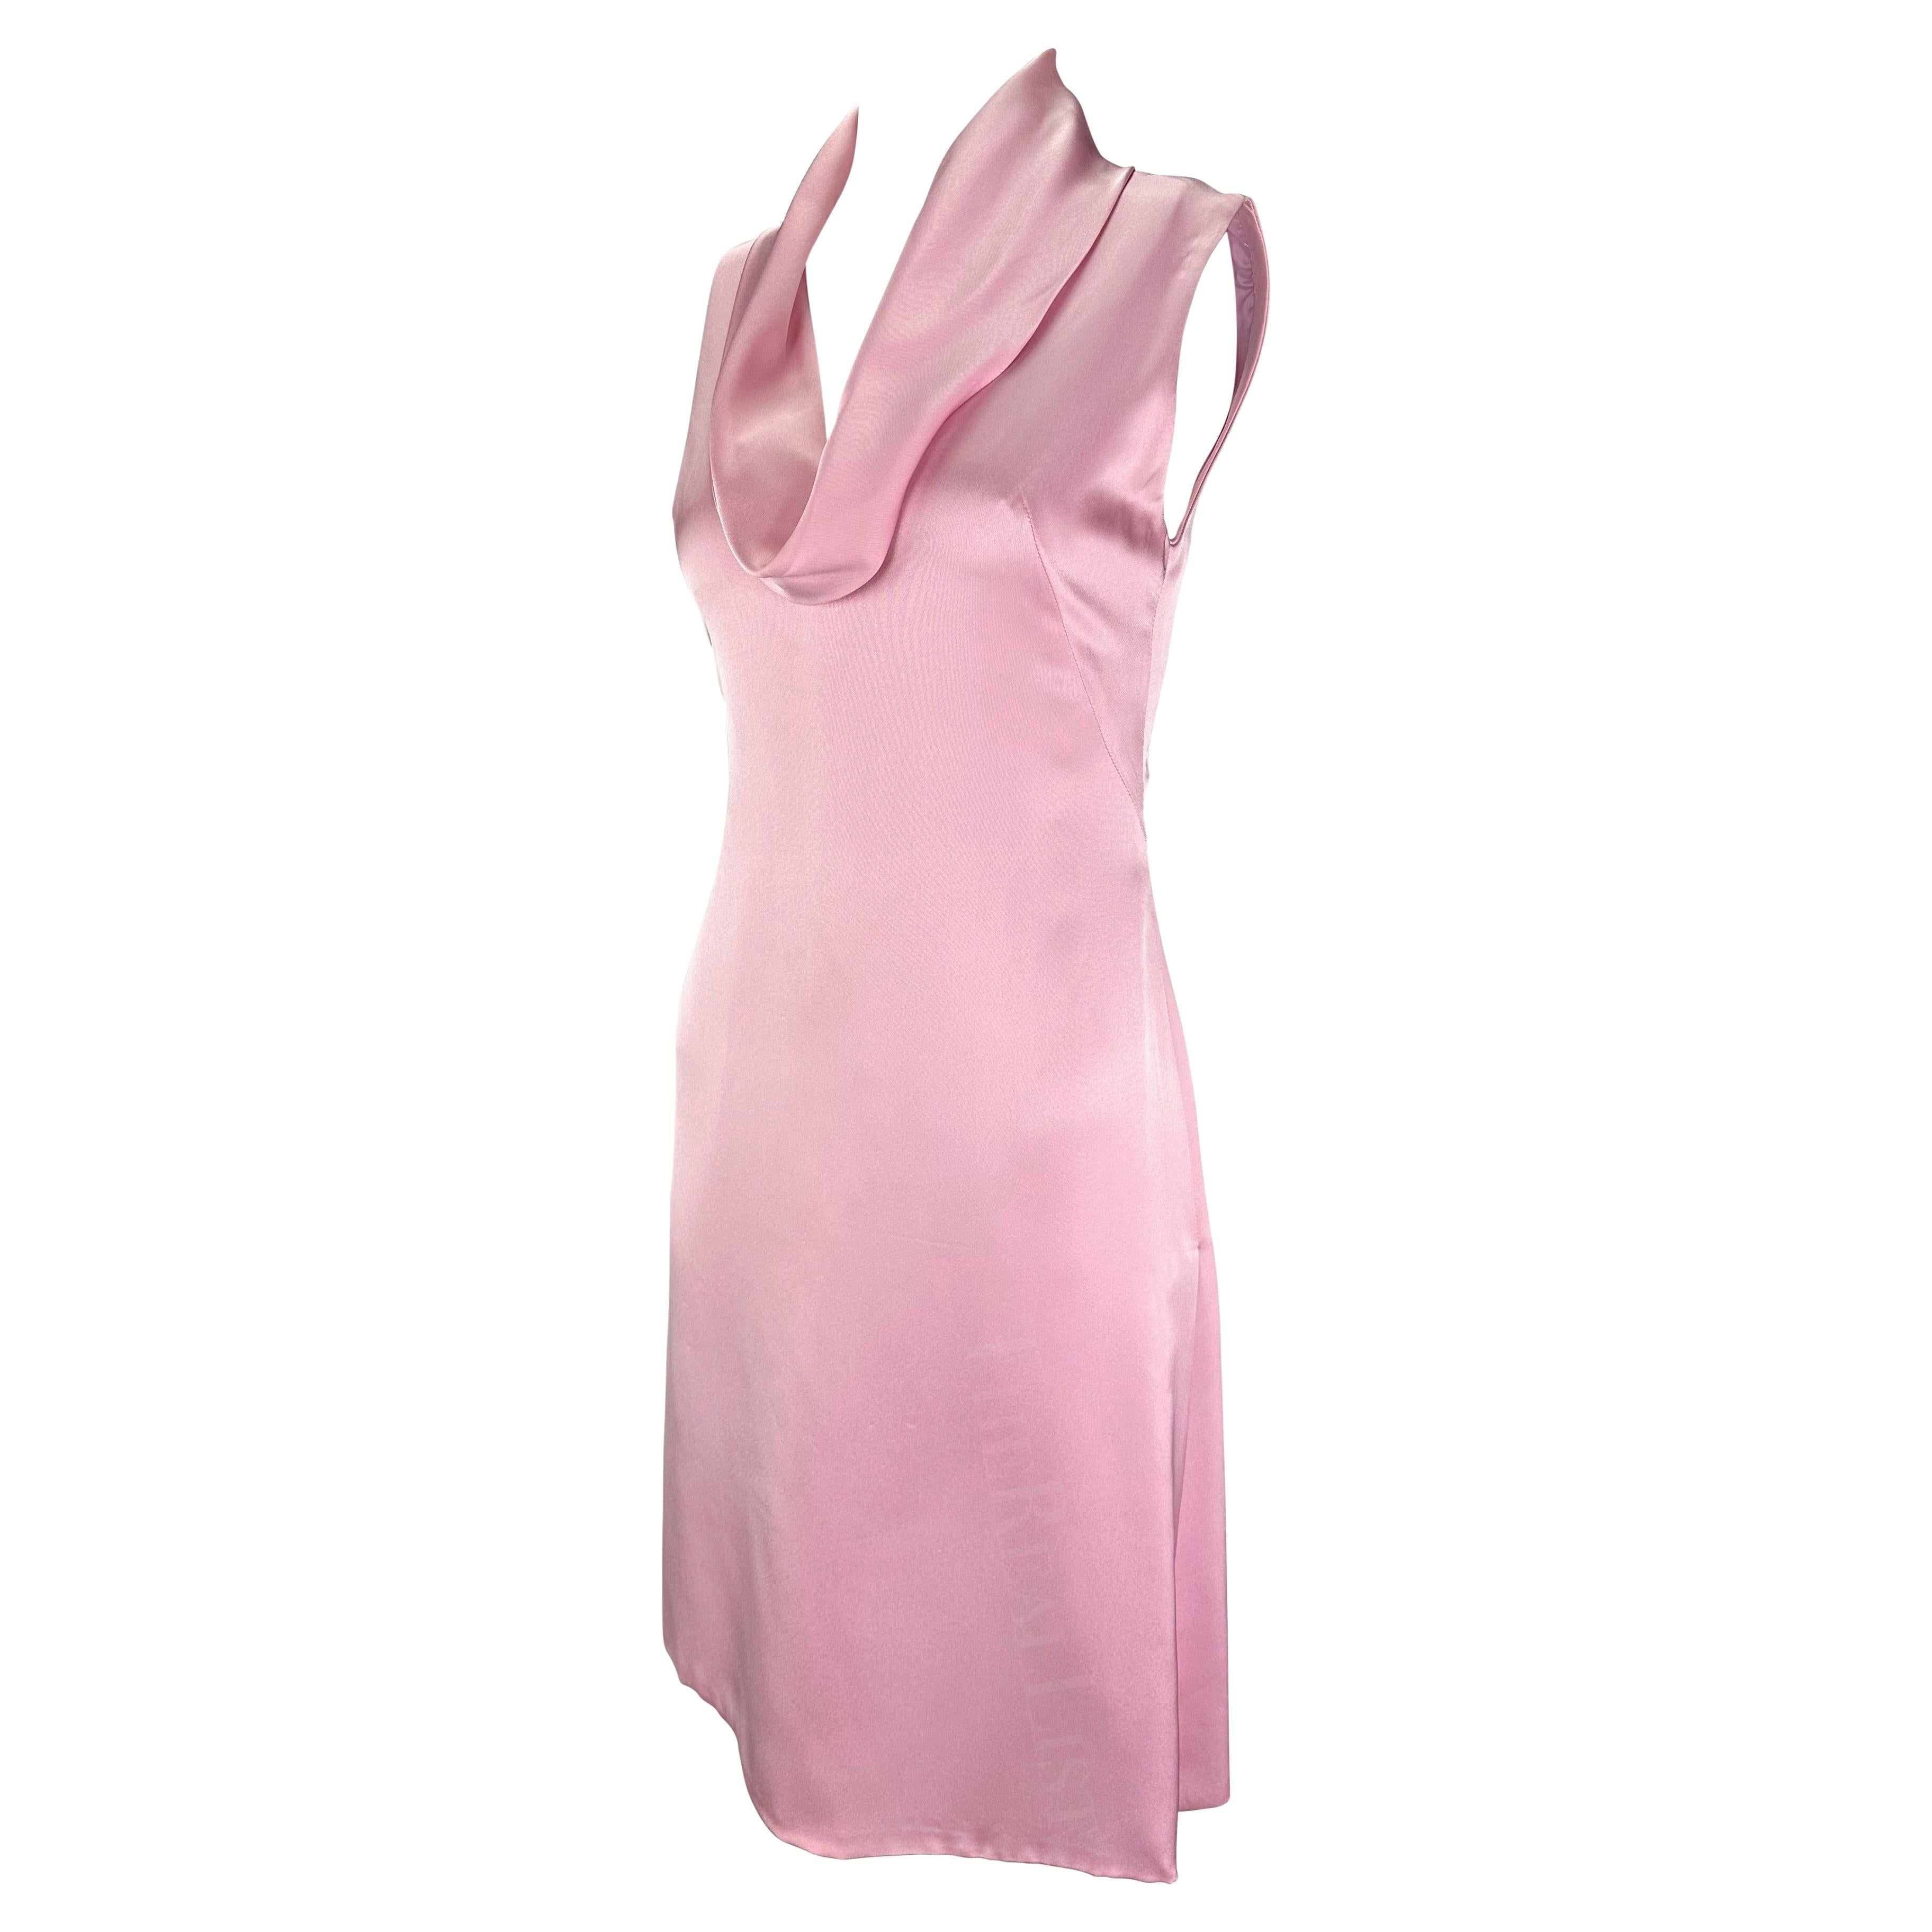 Nous vous présentons une magnifique mini robe rose pâle Gianni Versace, conçue par Donatella Versace. Datant du début des années 2000, cette robe rose pastel enchante par sa teinte délicate et brille par le toucher luxueux du satin de soie. Le